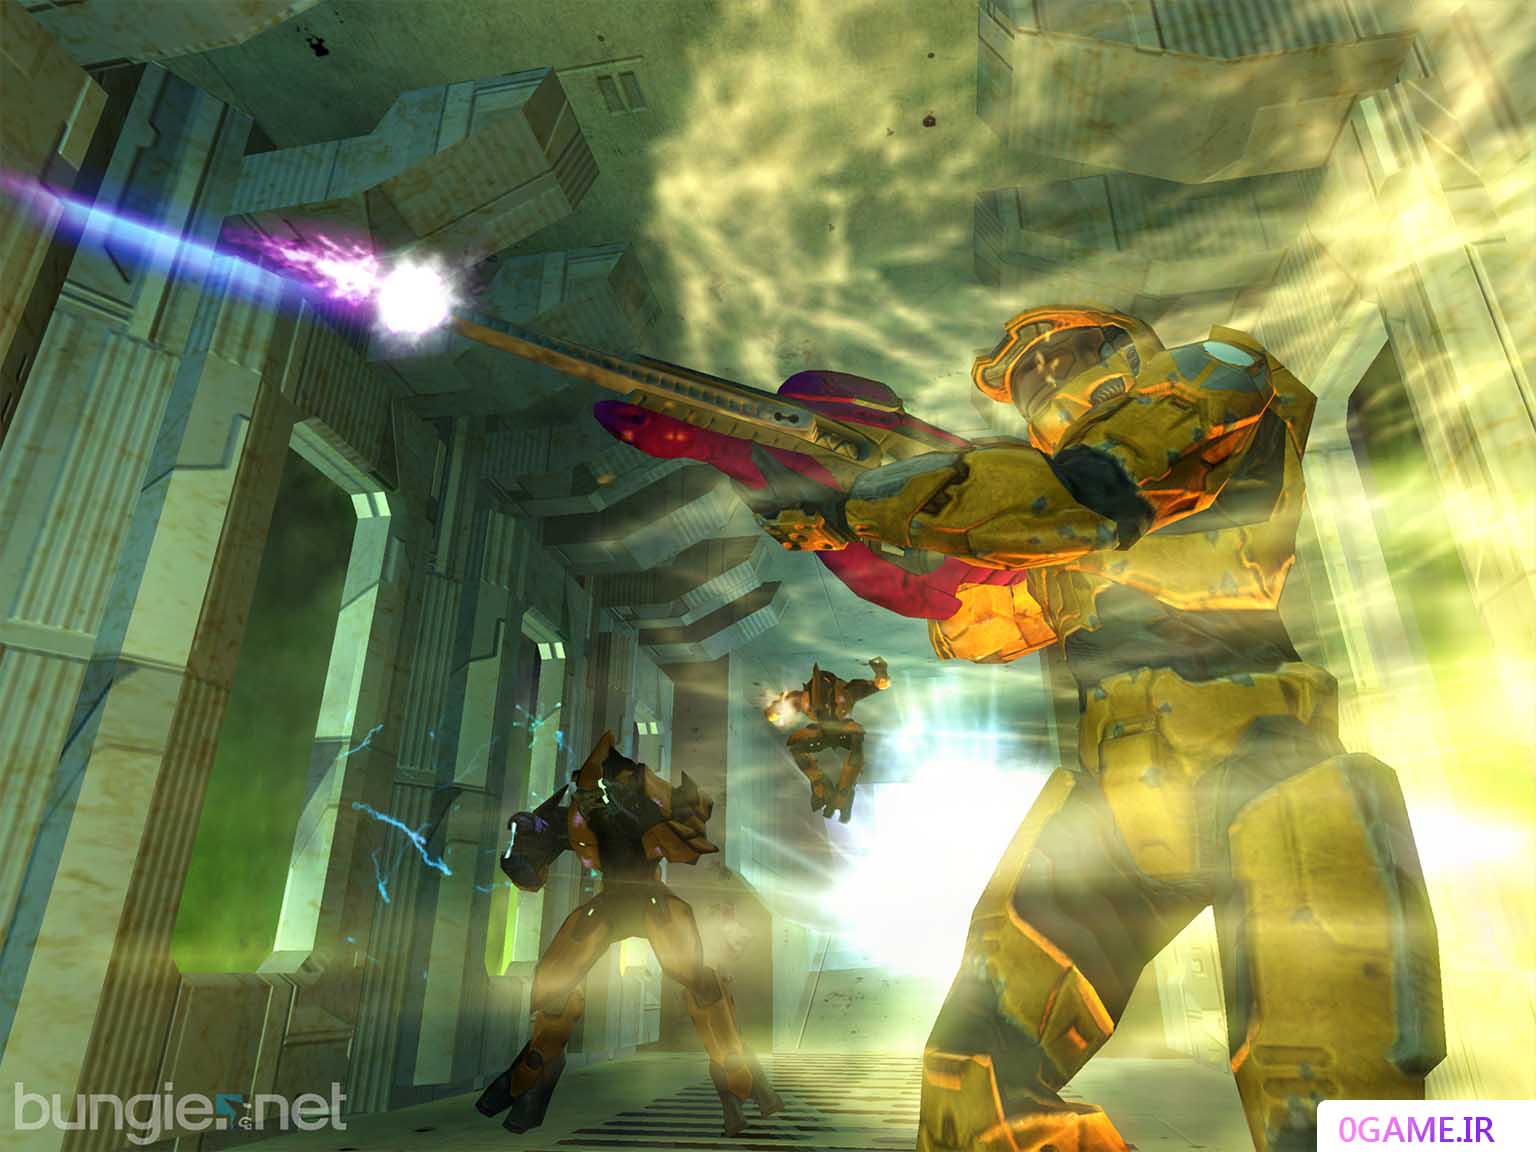 دانلود بازی هیلو ۲ (Halo 2) نسخه کامل برای کامپیوتر